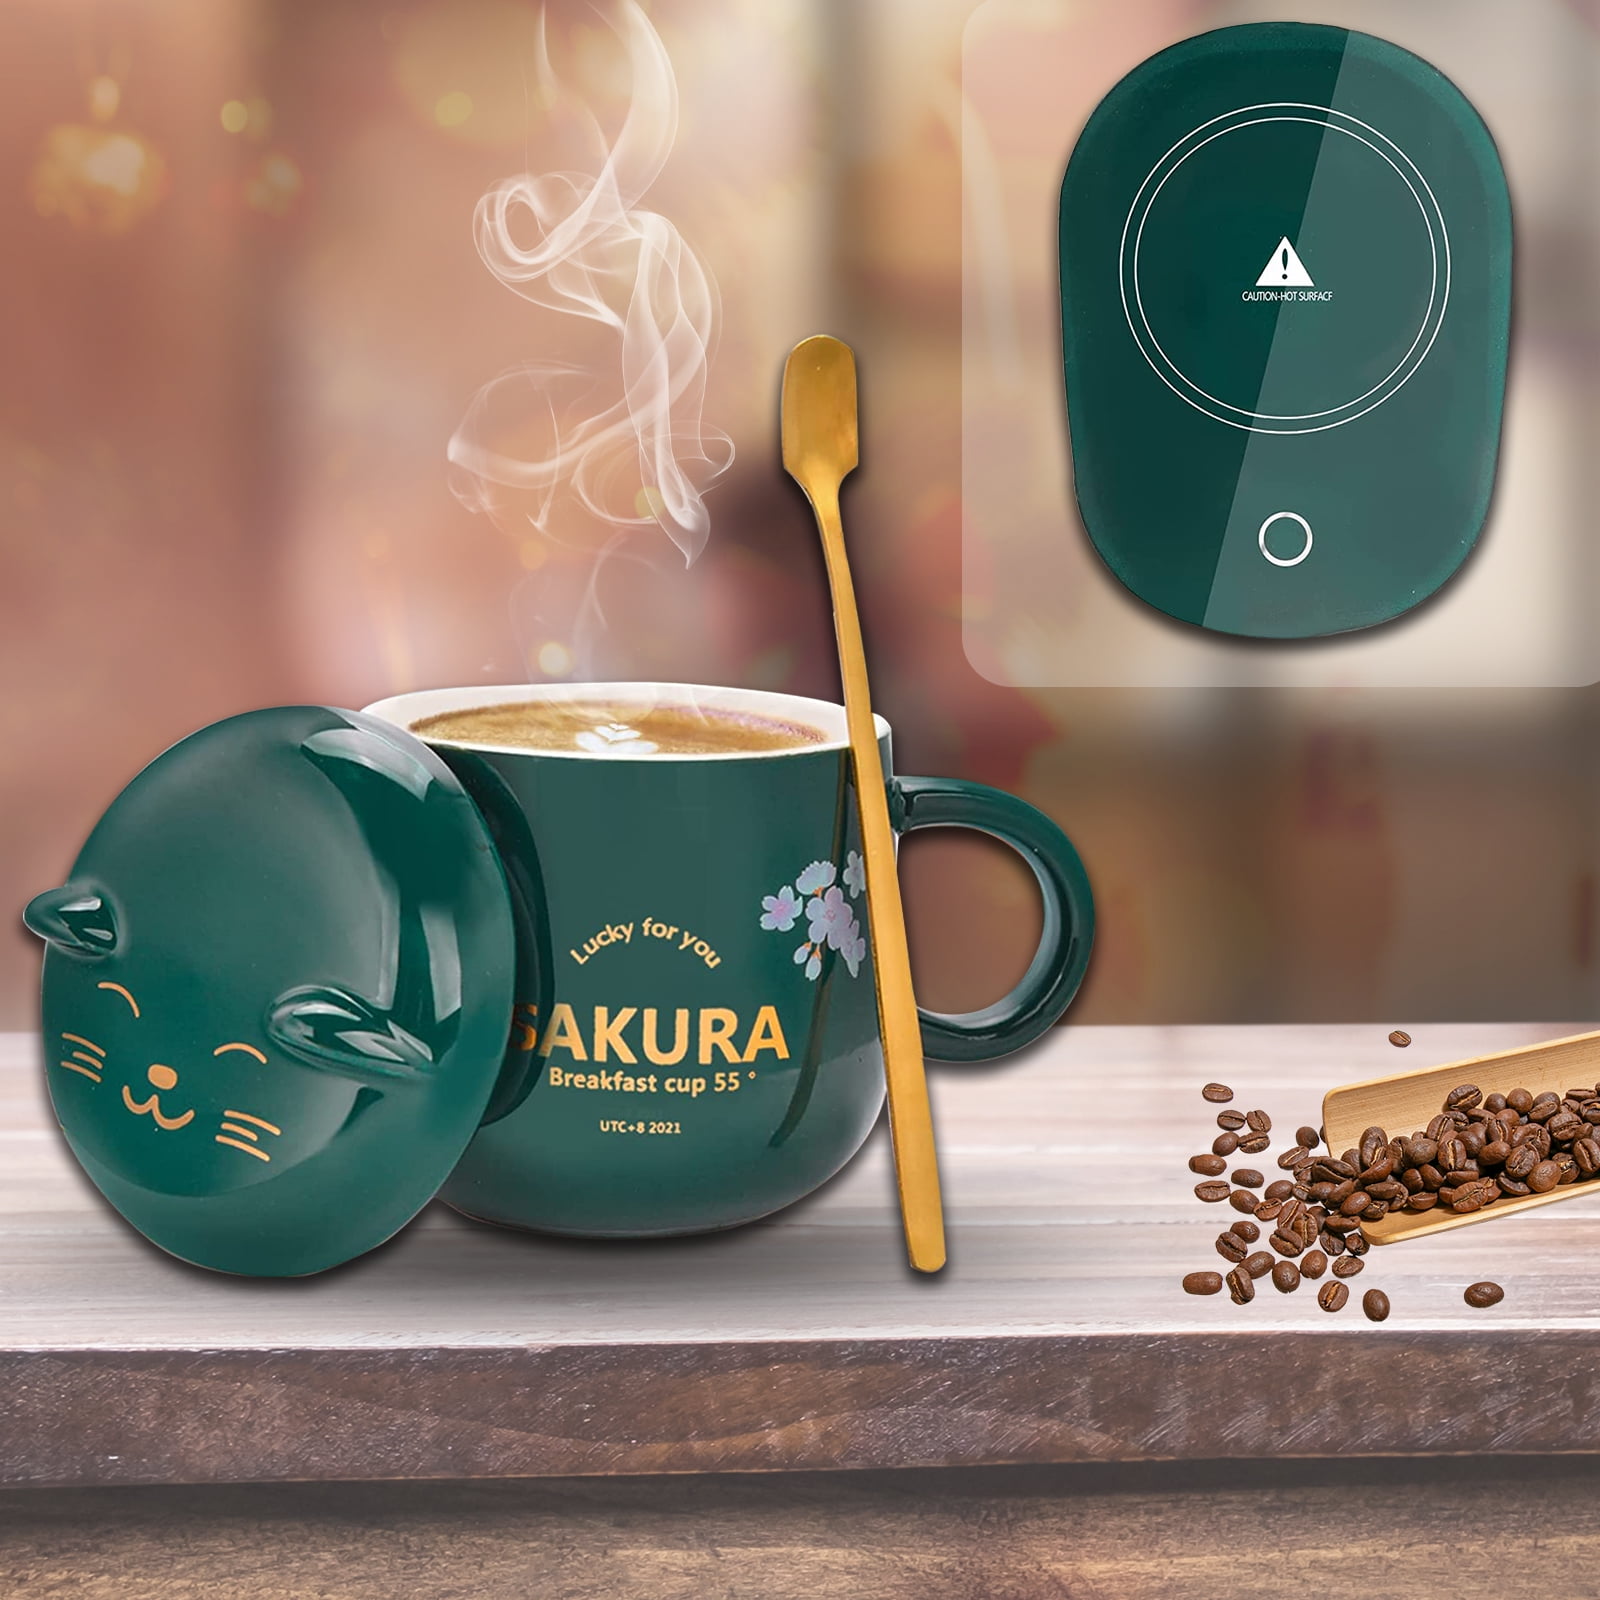 Coffee Warmer with Mug, Smart Coffee Mug Warmer with Cute Cat